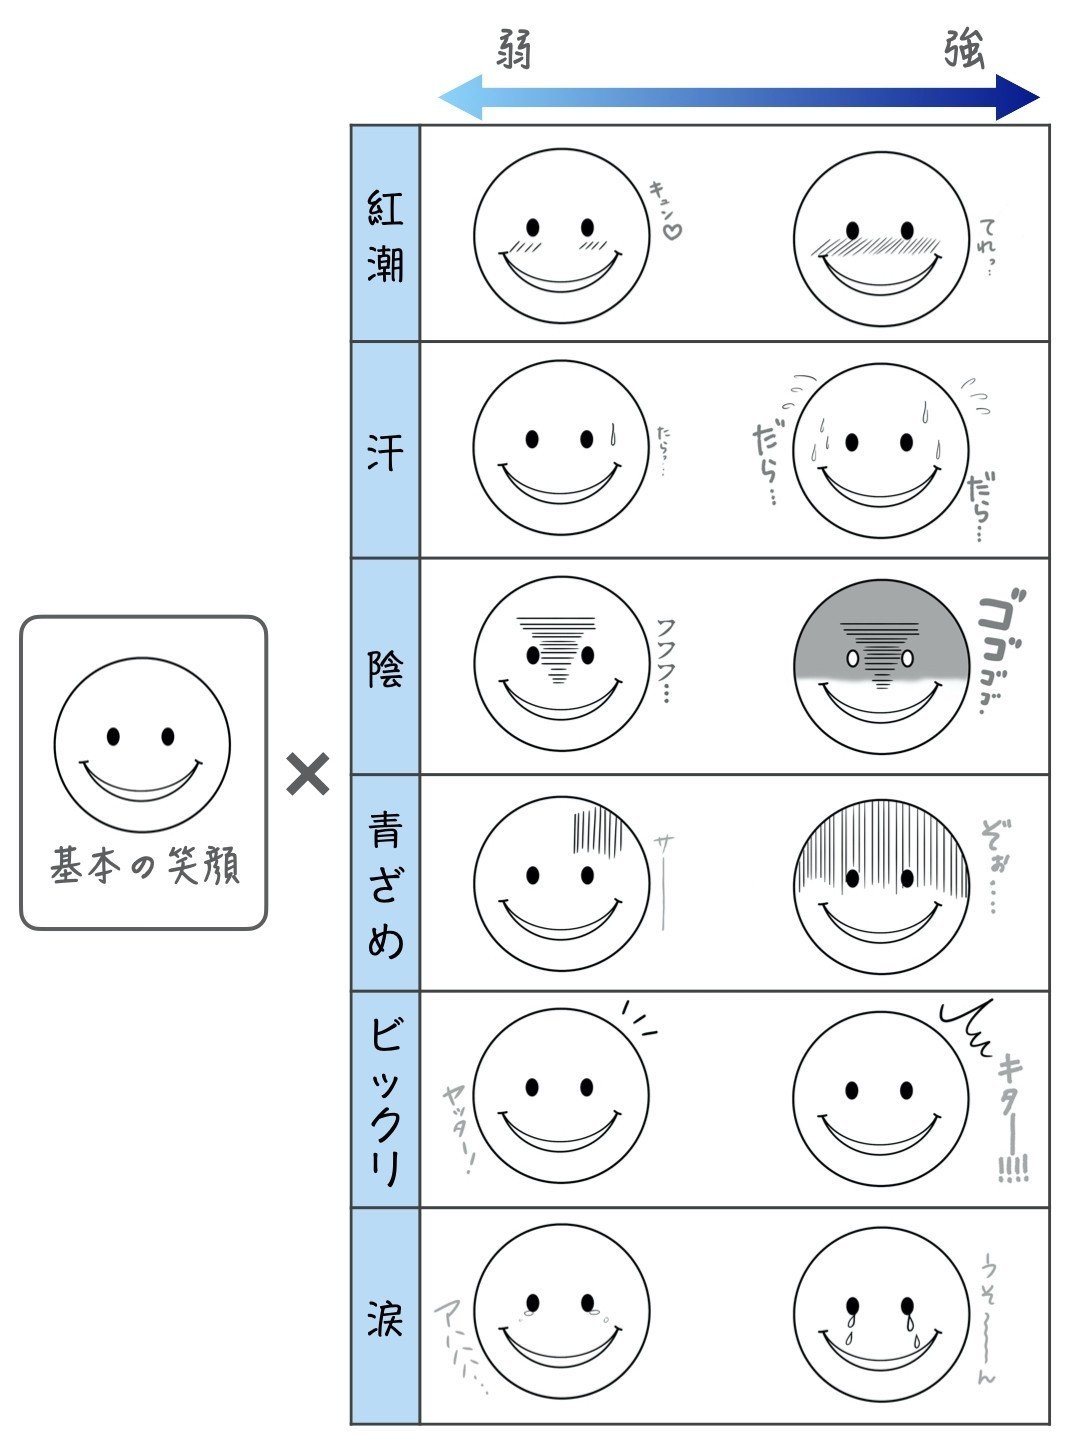 病み笑いのような複雑な表情が簡単に描ける6つのアイテム 峰村 佳 Note